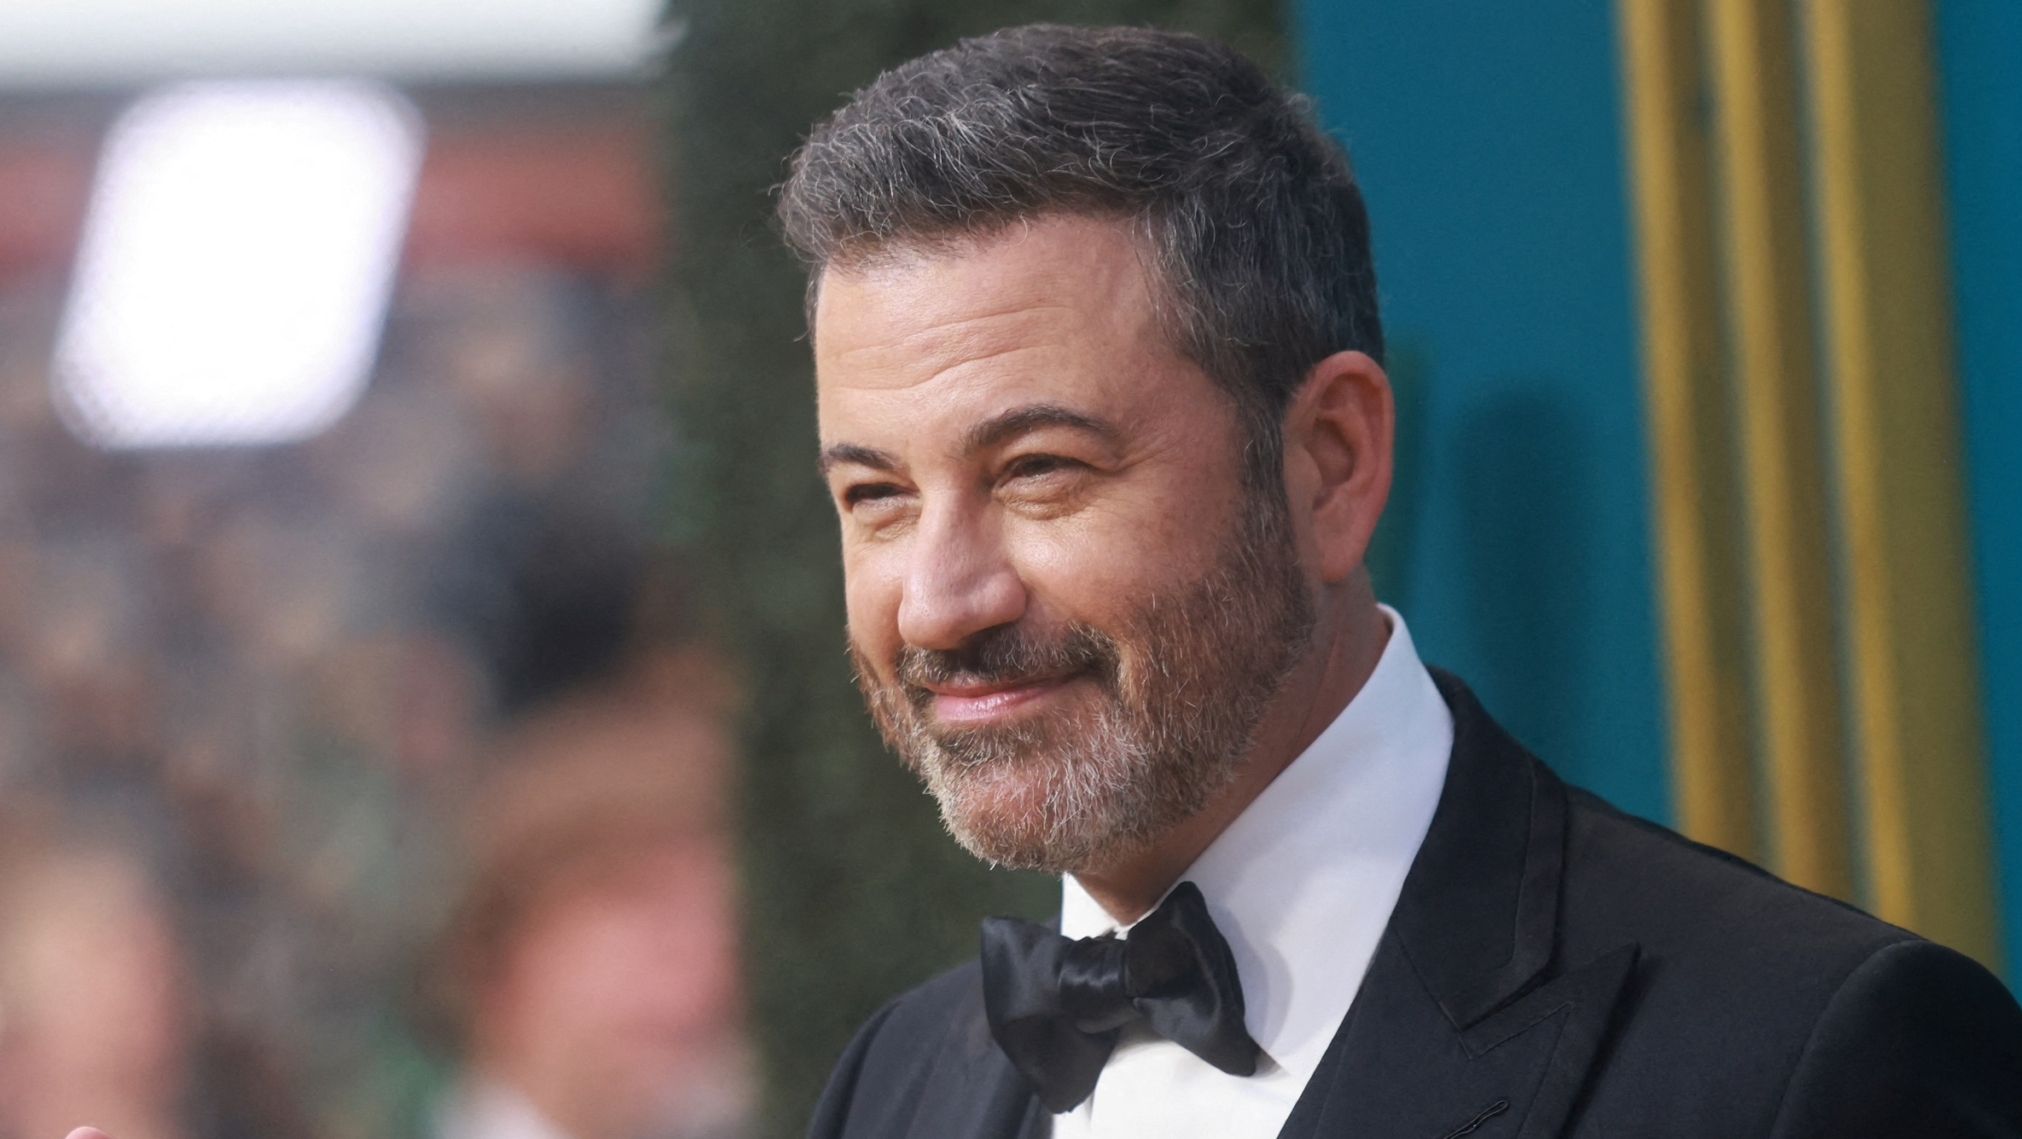 Comedian Jimmy Kimmel to Return as Oscars Host in 2023